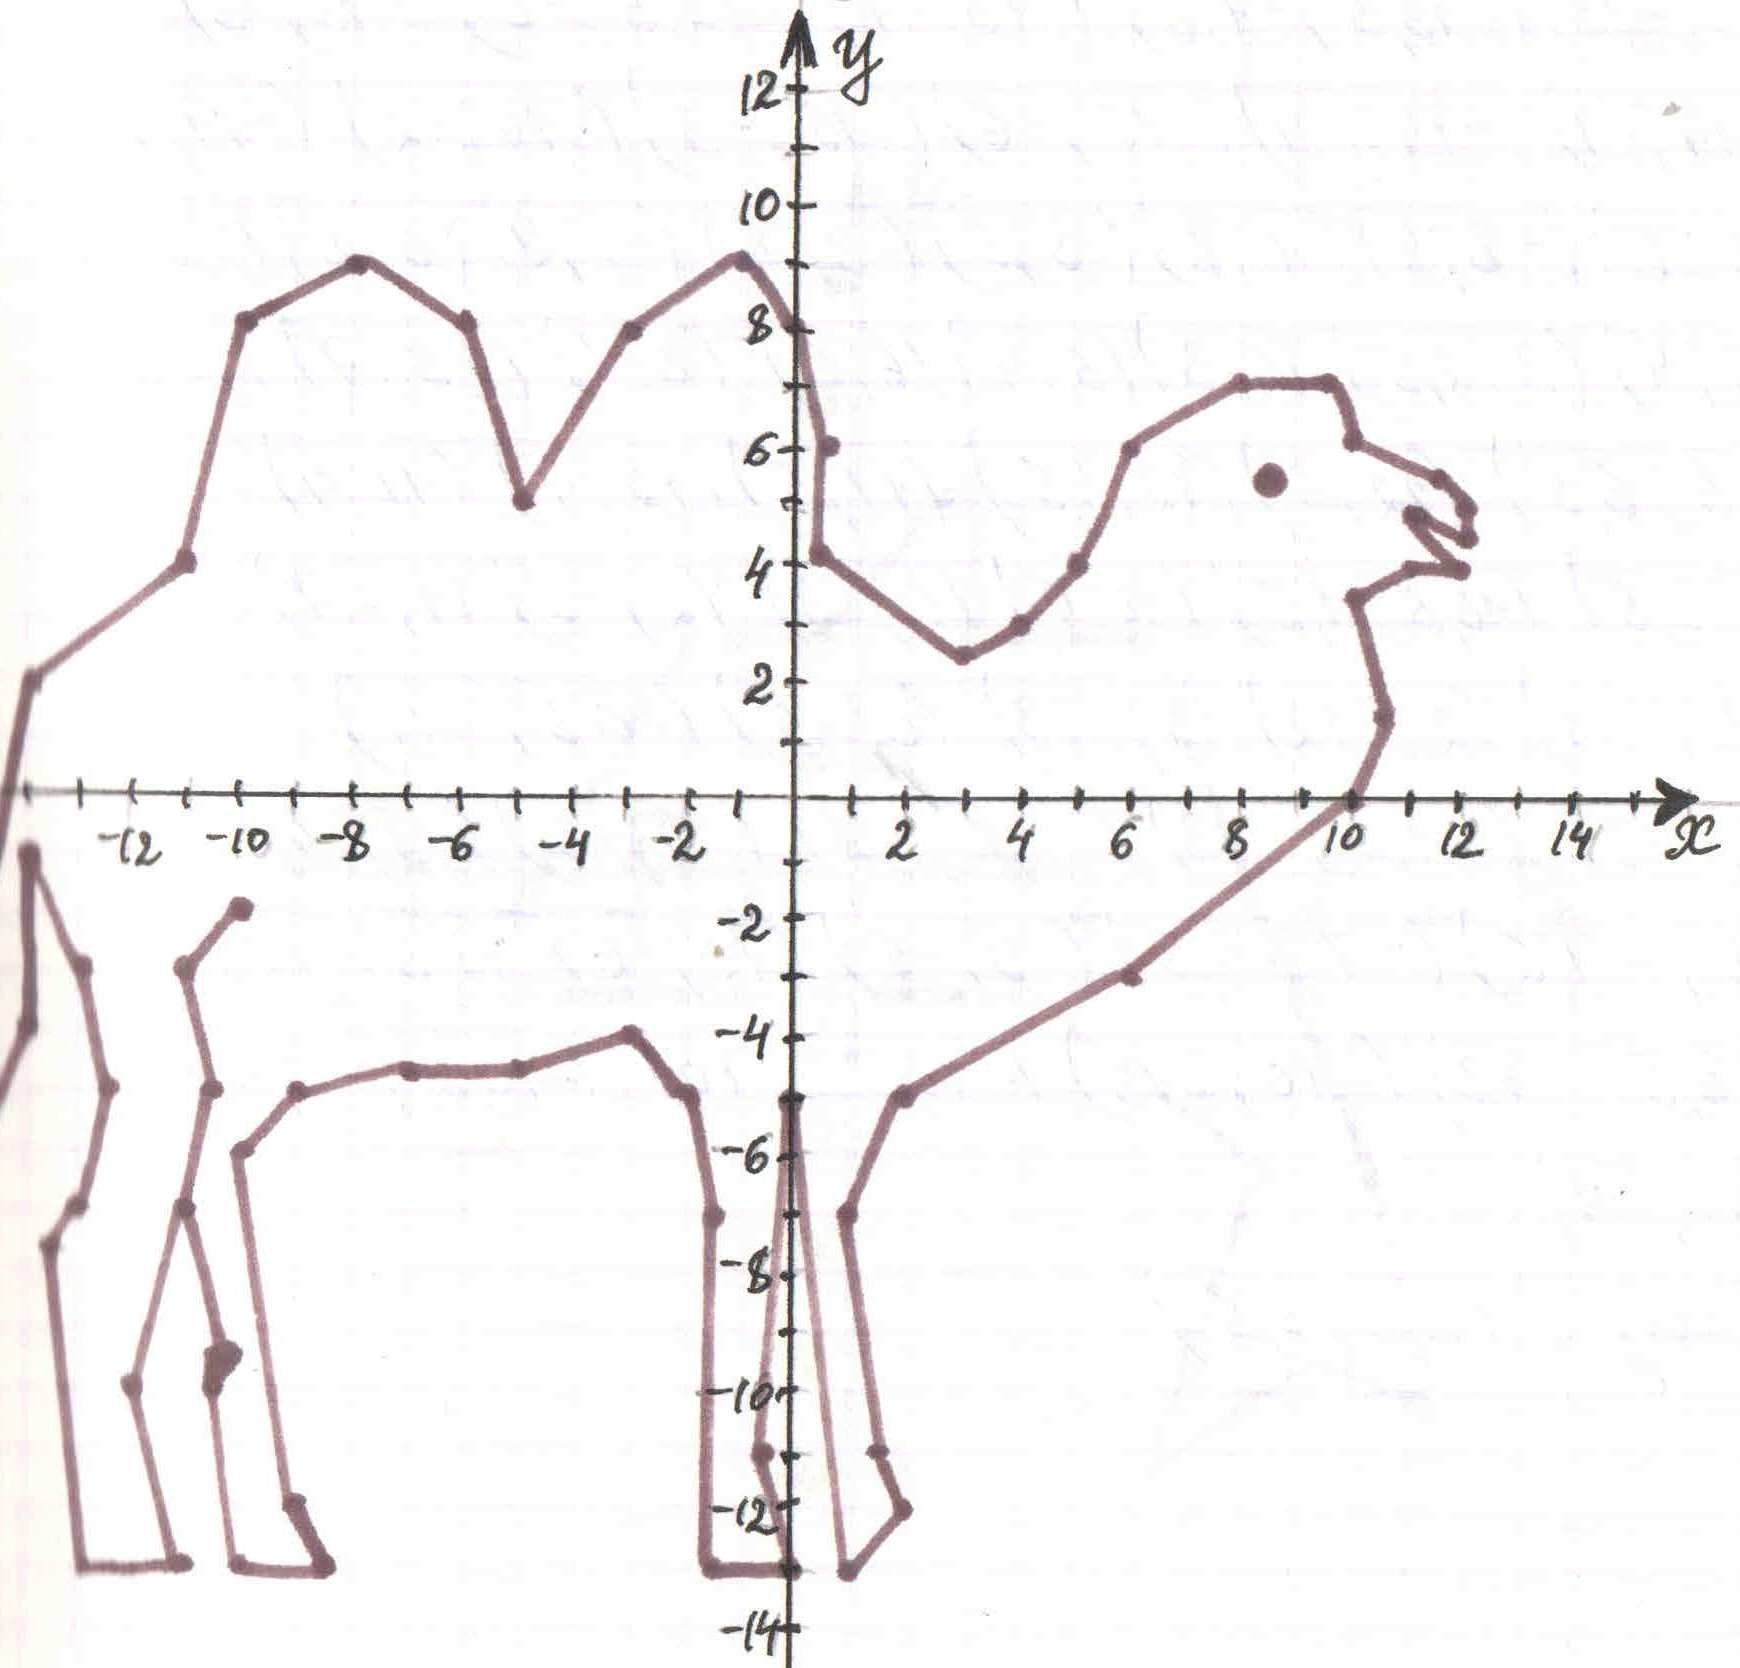 Пейгейм. Координатные плоскости (-1,-7),(-5,-3),(-5,-3). Рисунок верблюда по координатам -10 - 2. Координатная плоскость (-4;6),(-3;5). Рисунок по координатам (-2;2),(-2;-4).